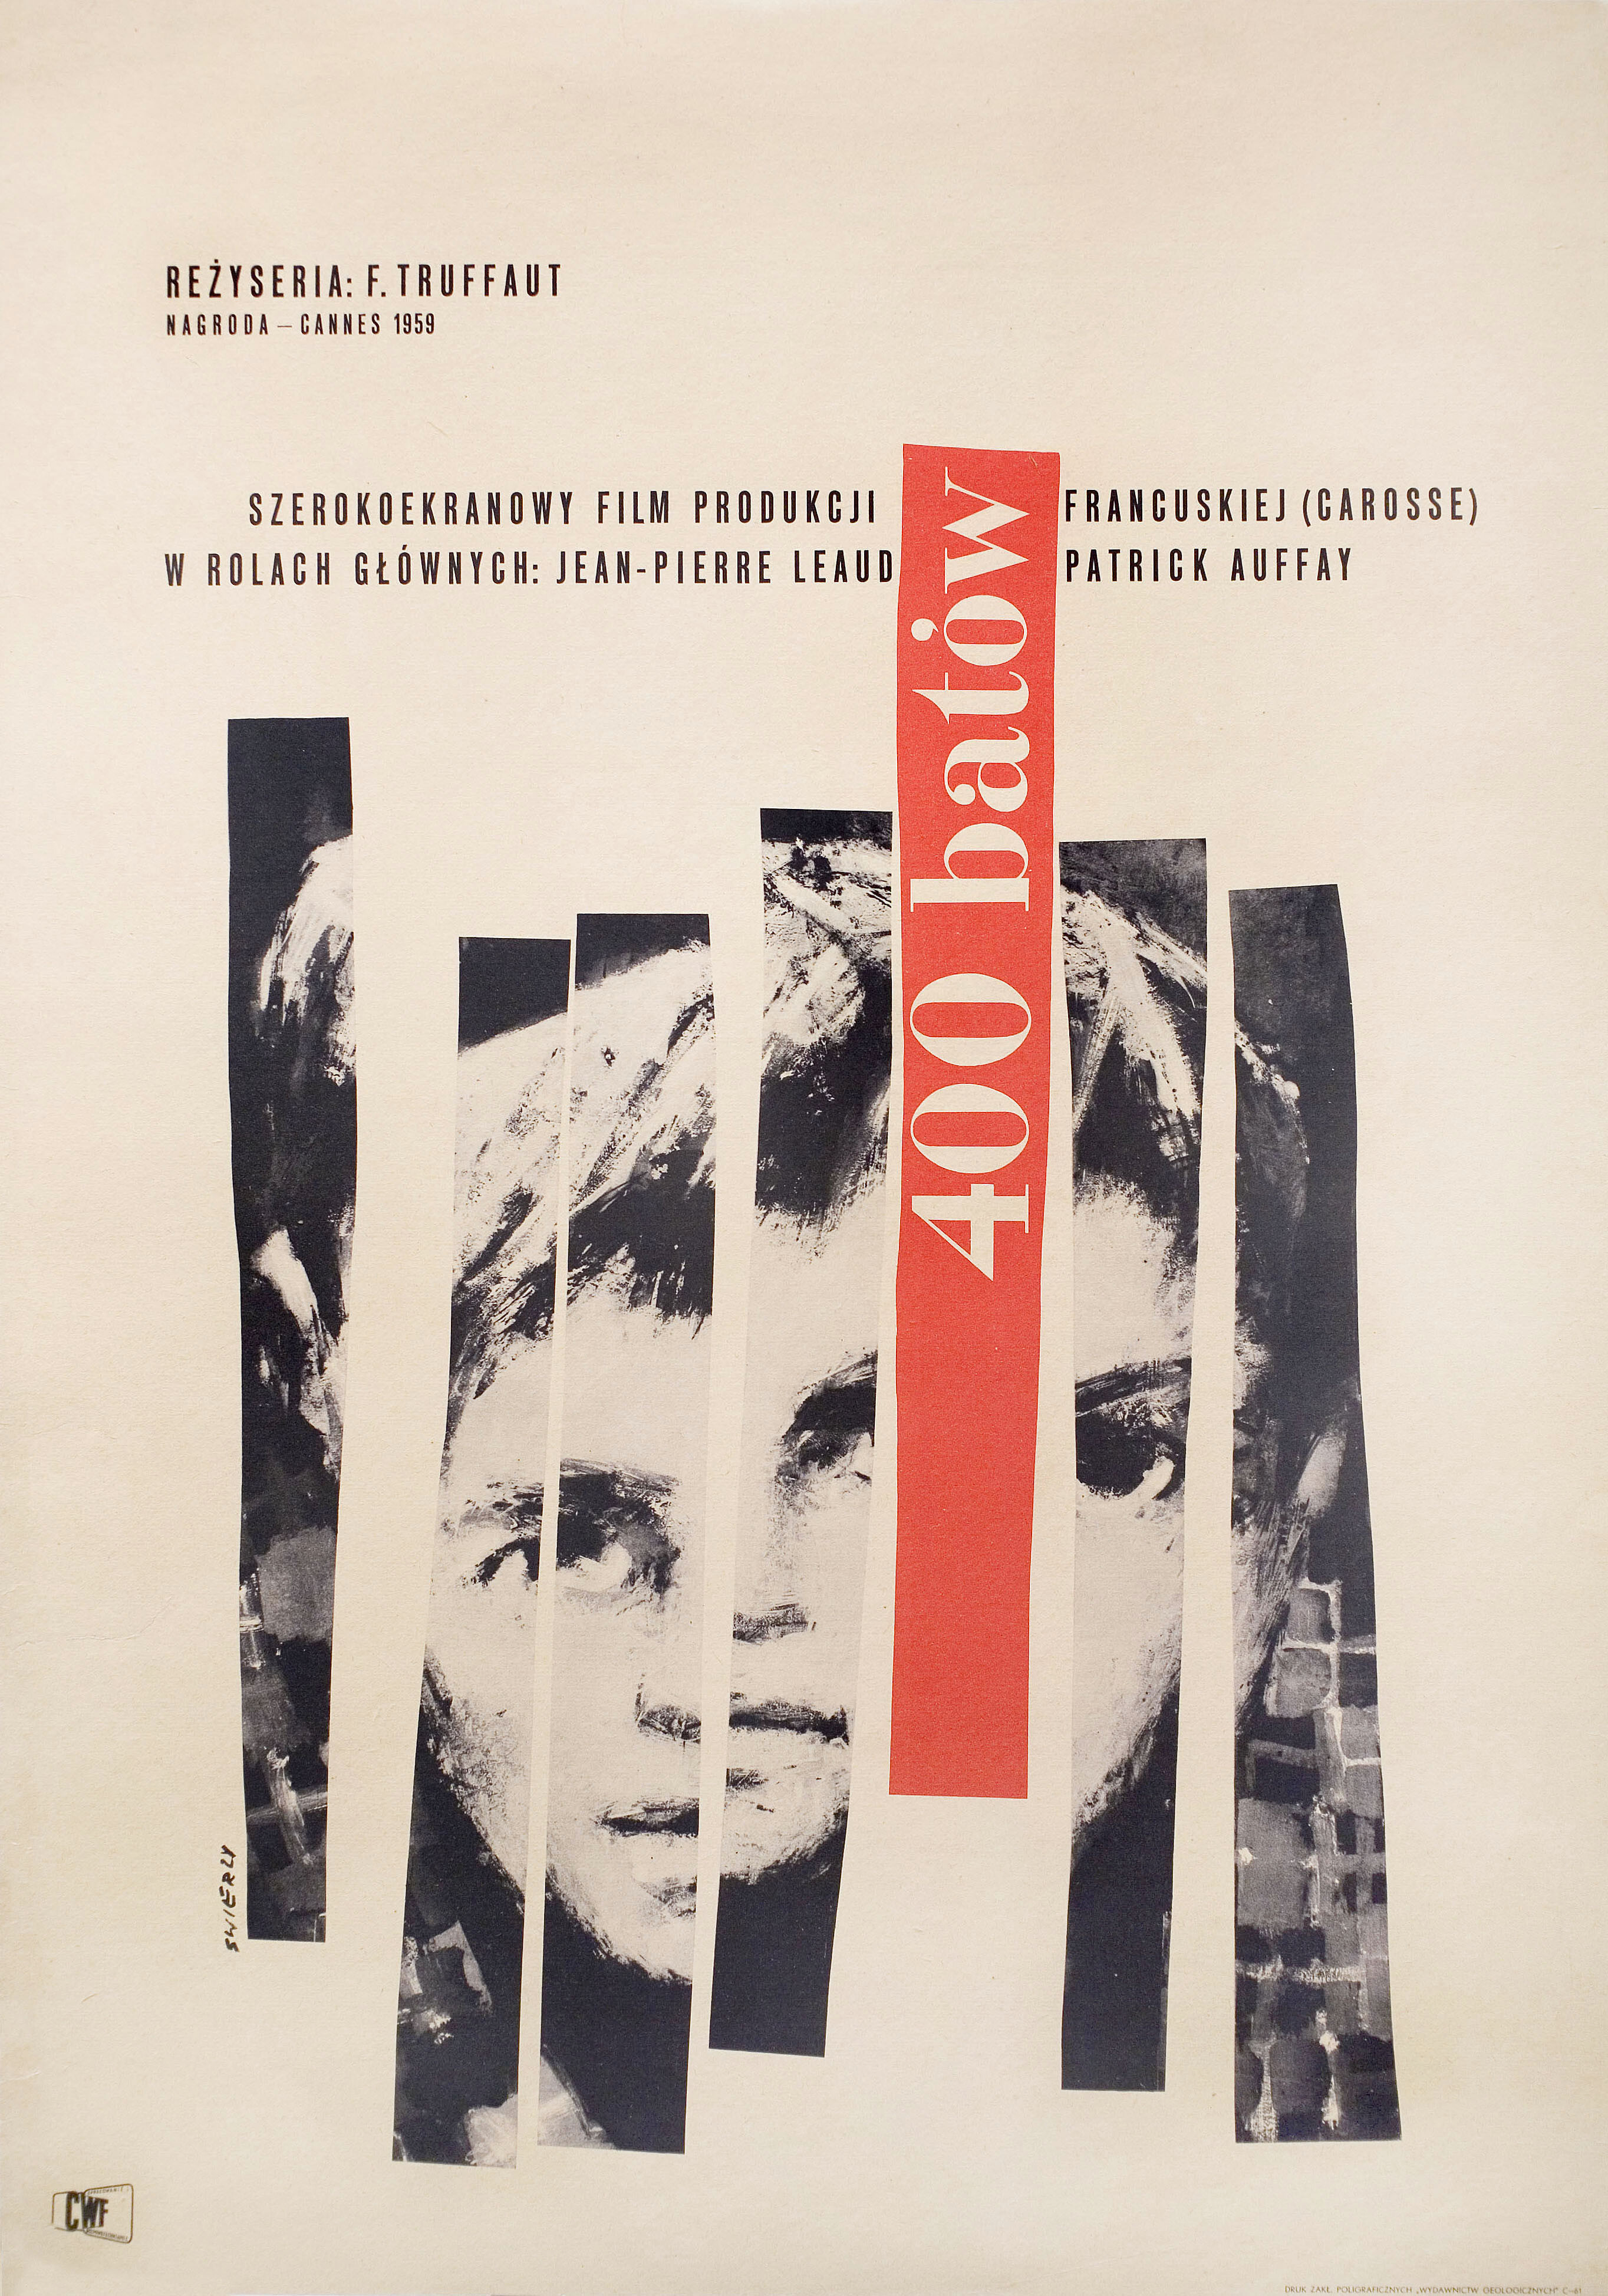 Четыреста ударов (The 400 Blows, 1959), режиссёр Франсуа Трюффо, художественный постер к фильму (Польша, 1959 год), автор Вальдемар Свежи